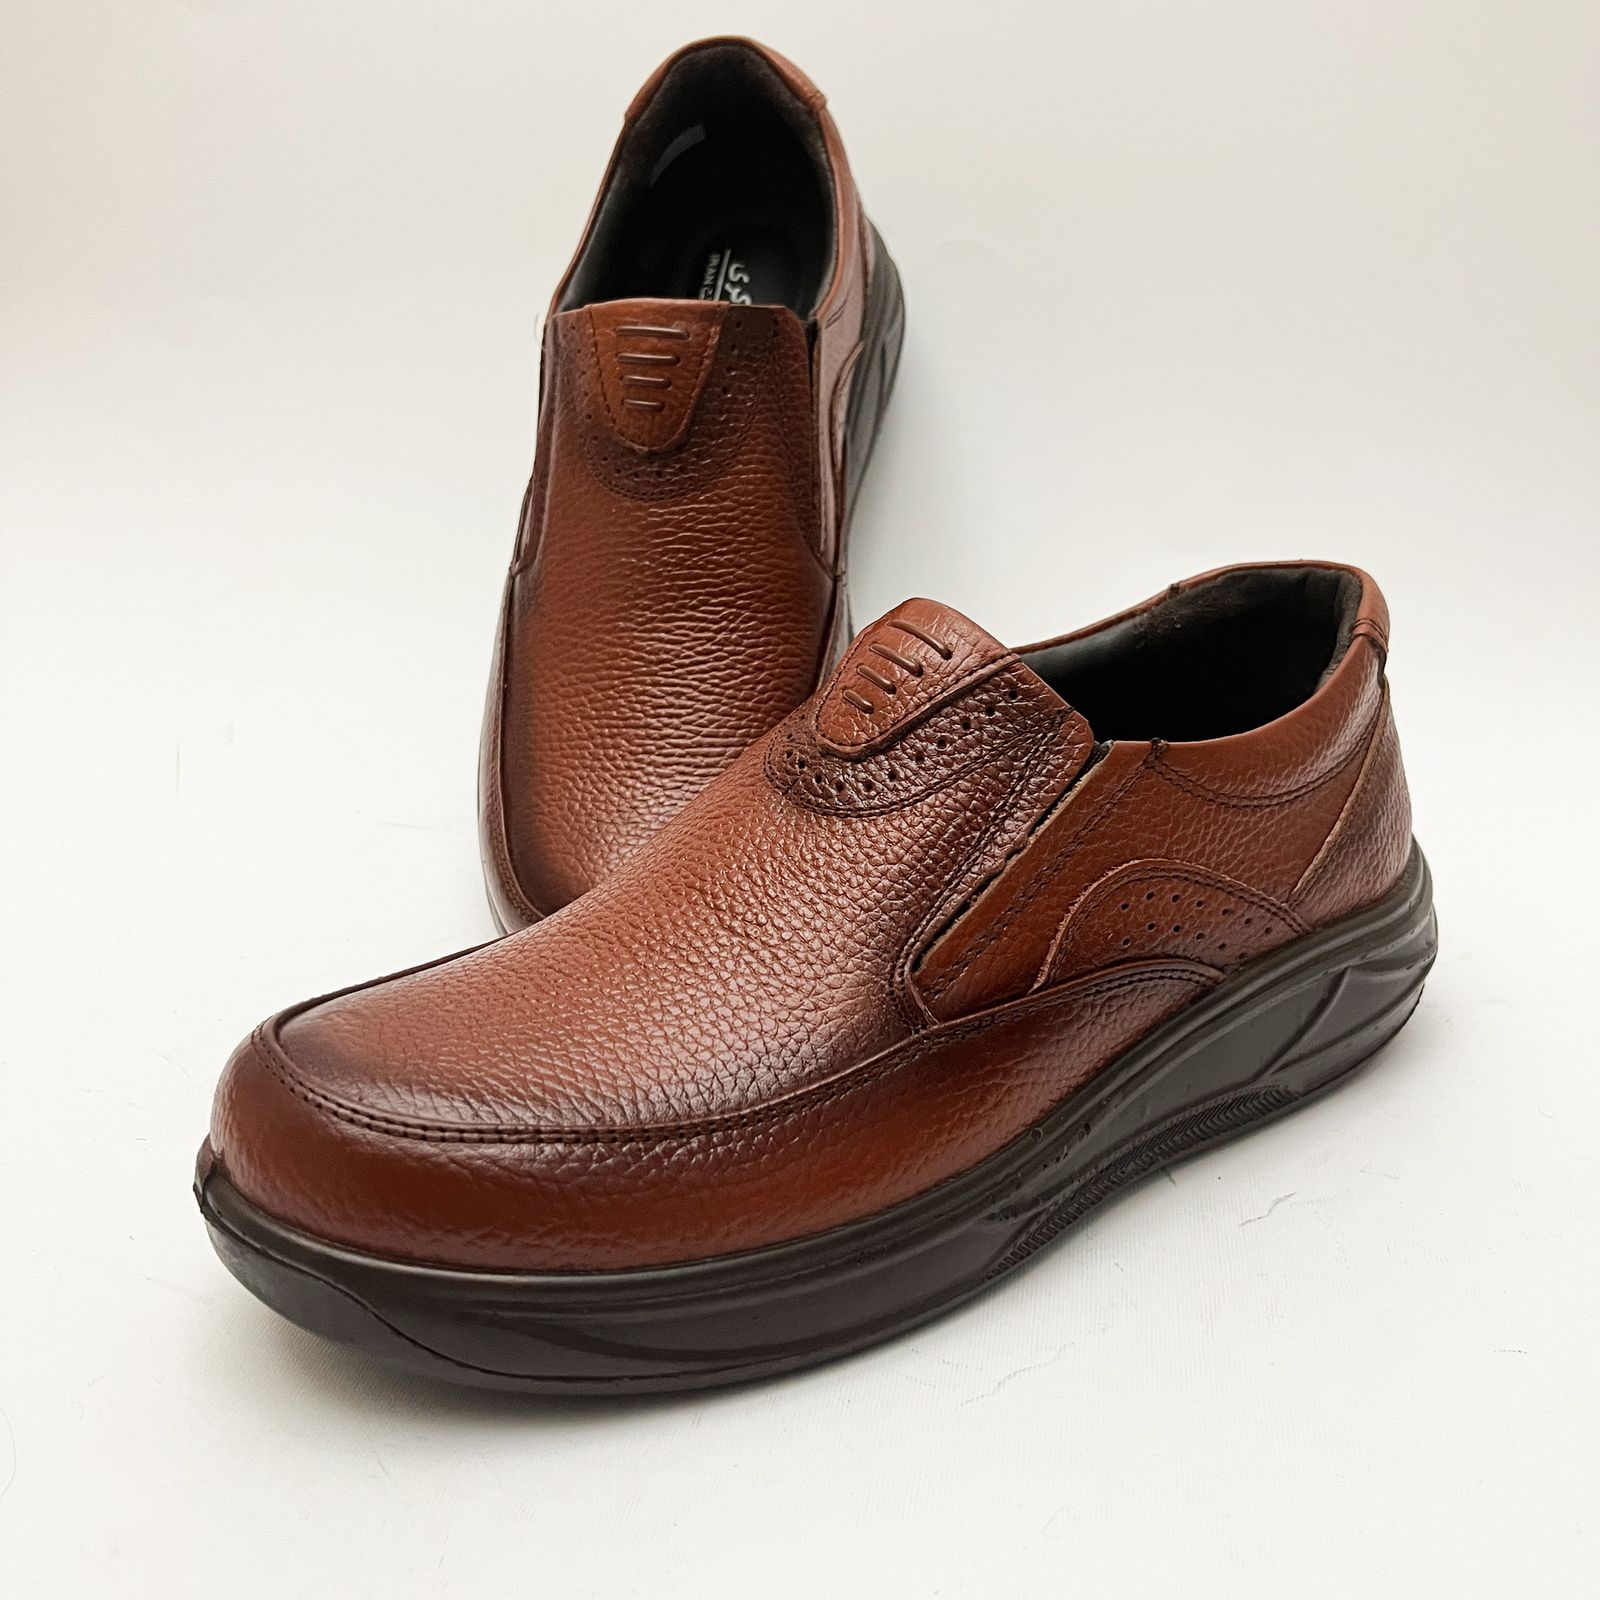 کفش طبی مردانه مدل چرمینه کد 4058 -  - 5